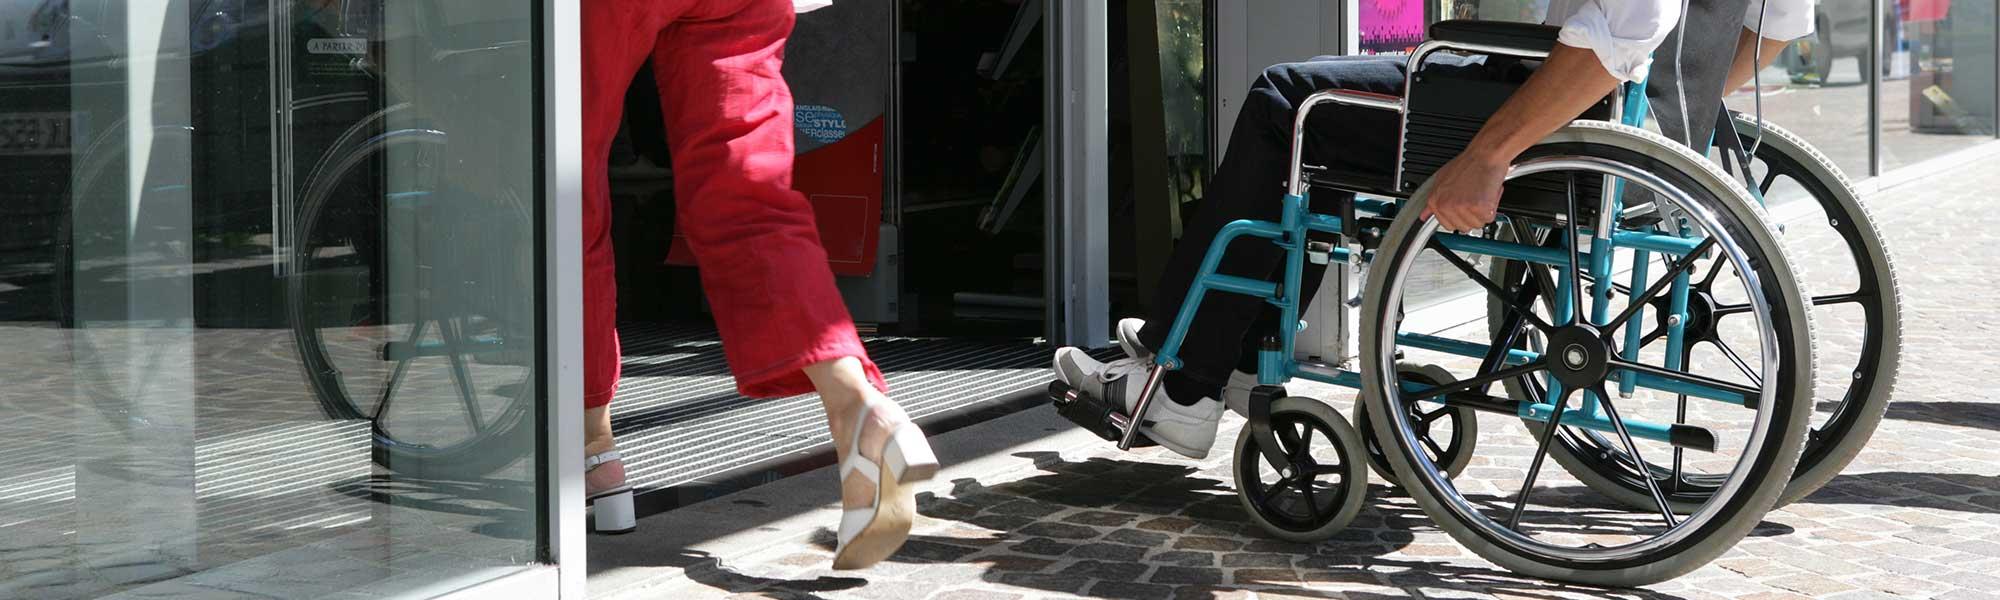 Accessibilité des bâtiments et handicap, que dit la loi